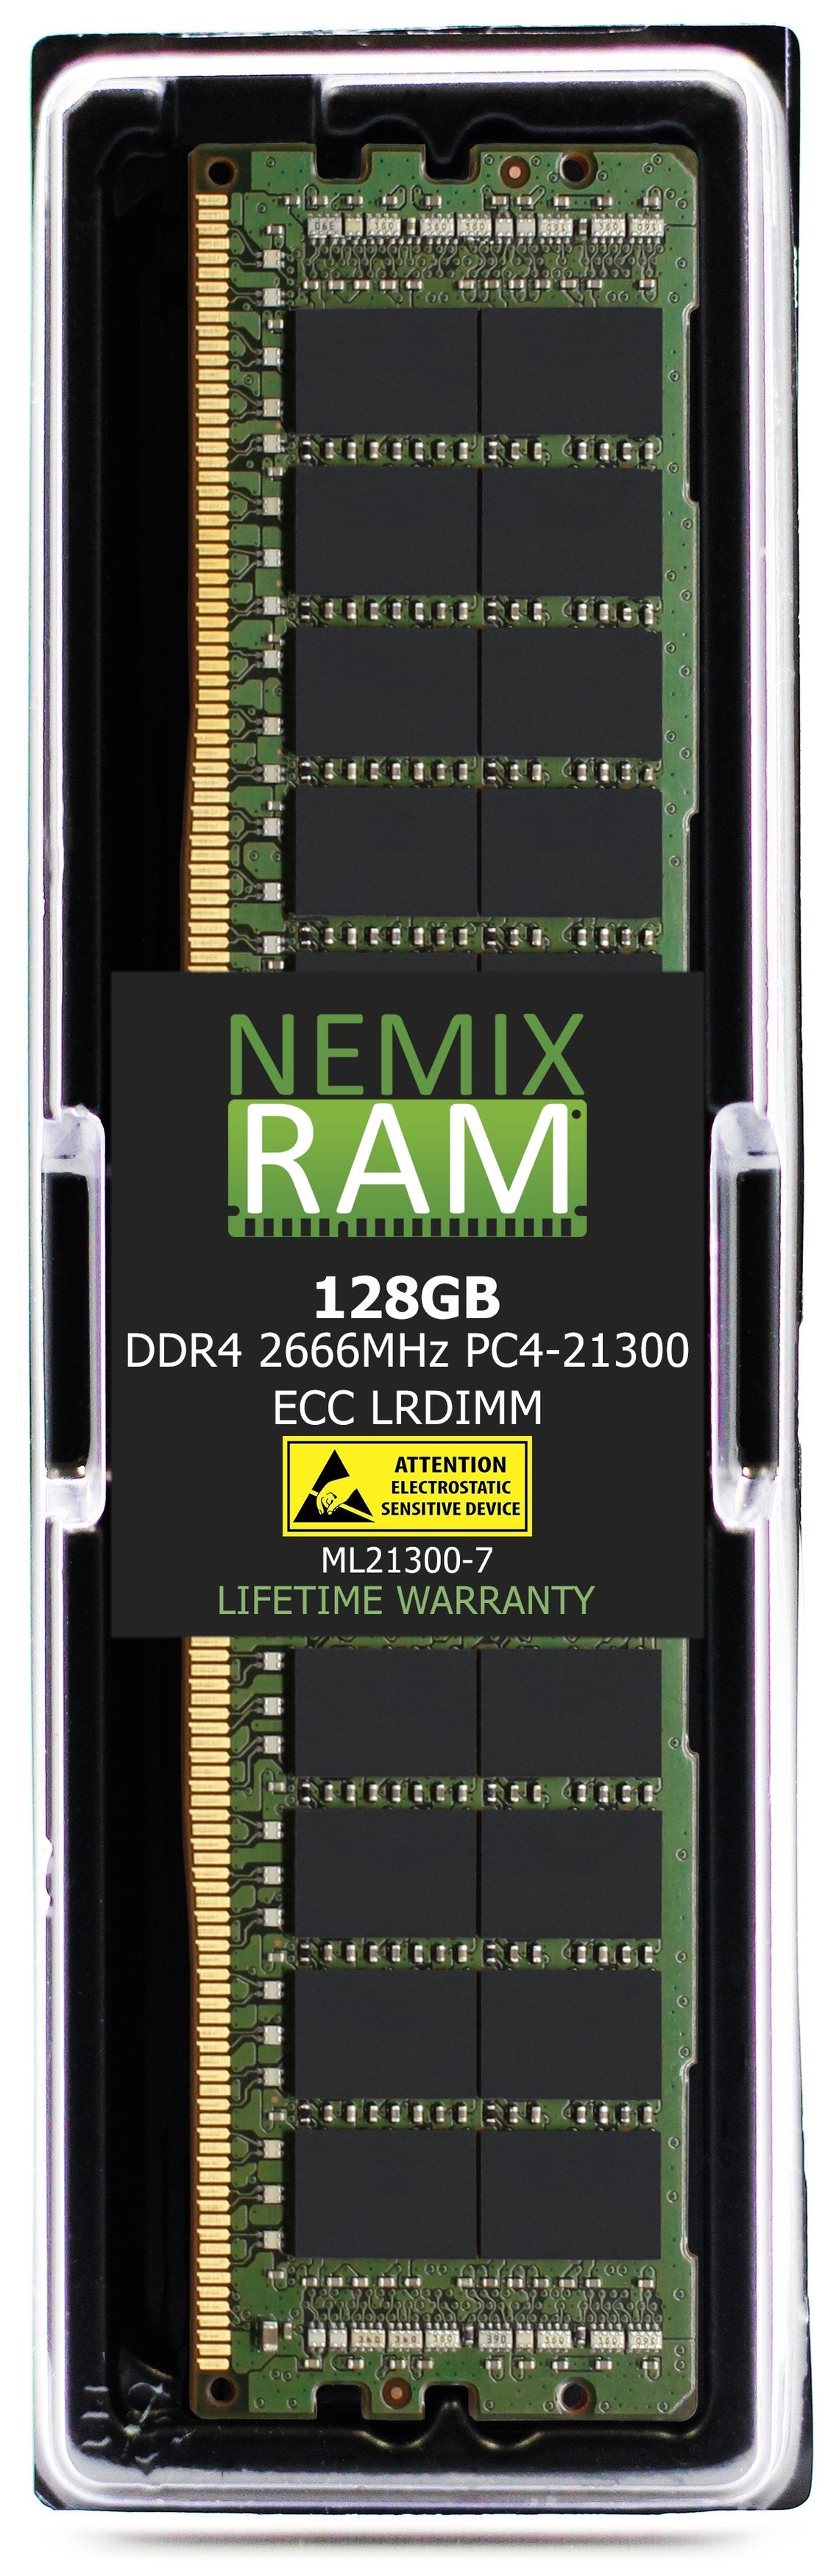 128GB DDR4 2666MHZ PC4-21300 LRDIMM Compatible with Supermicro MEM-DR412L-HL01-LR26